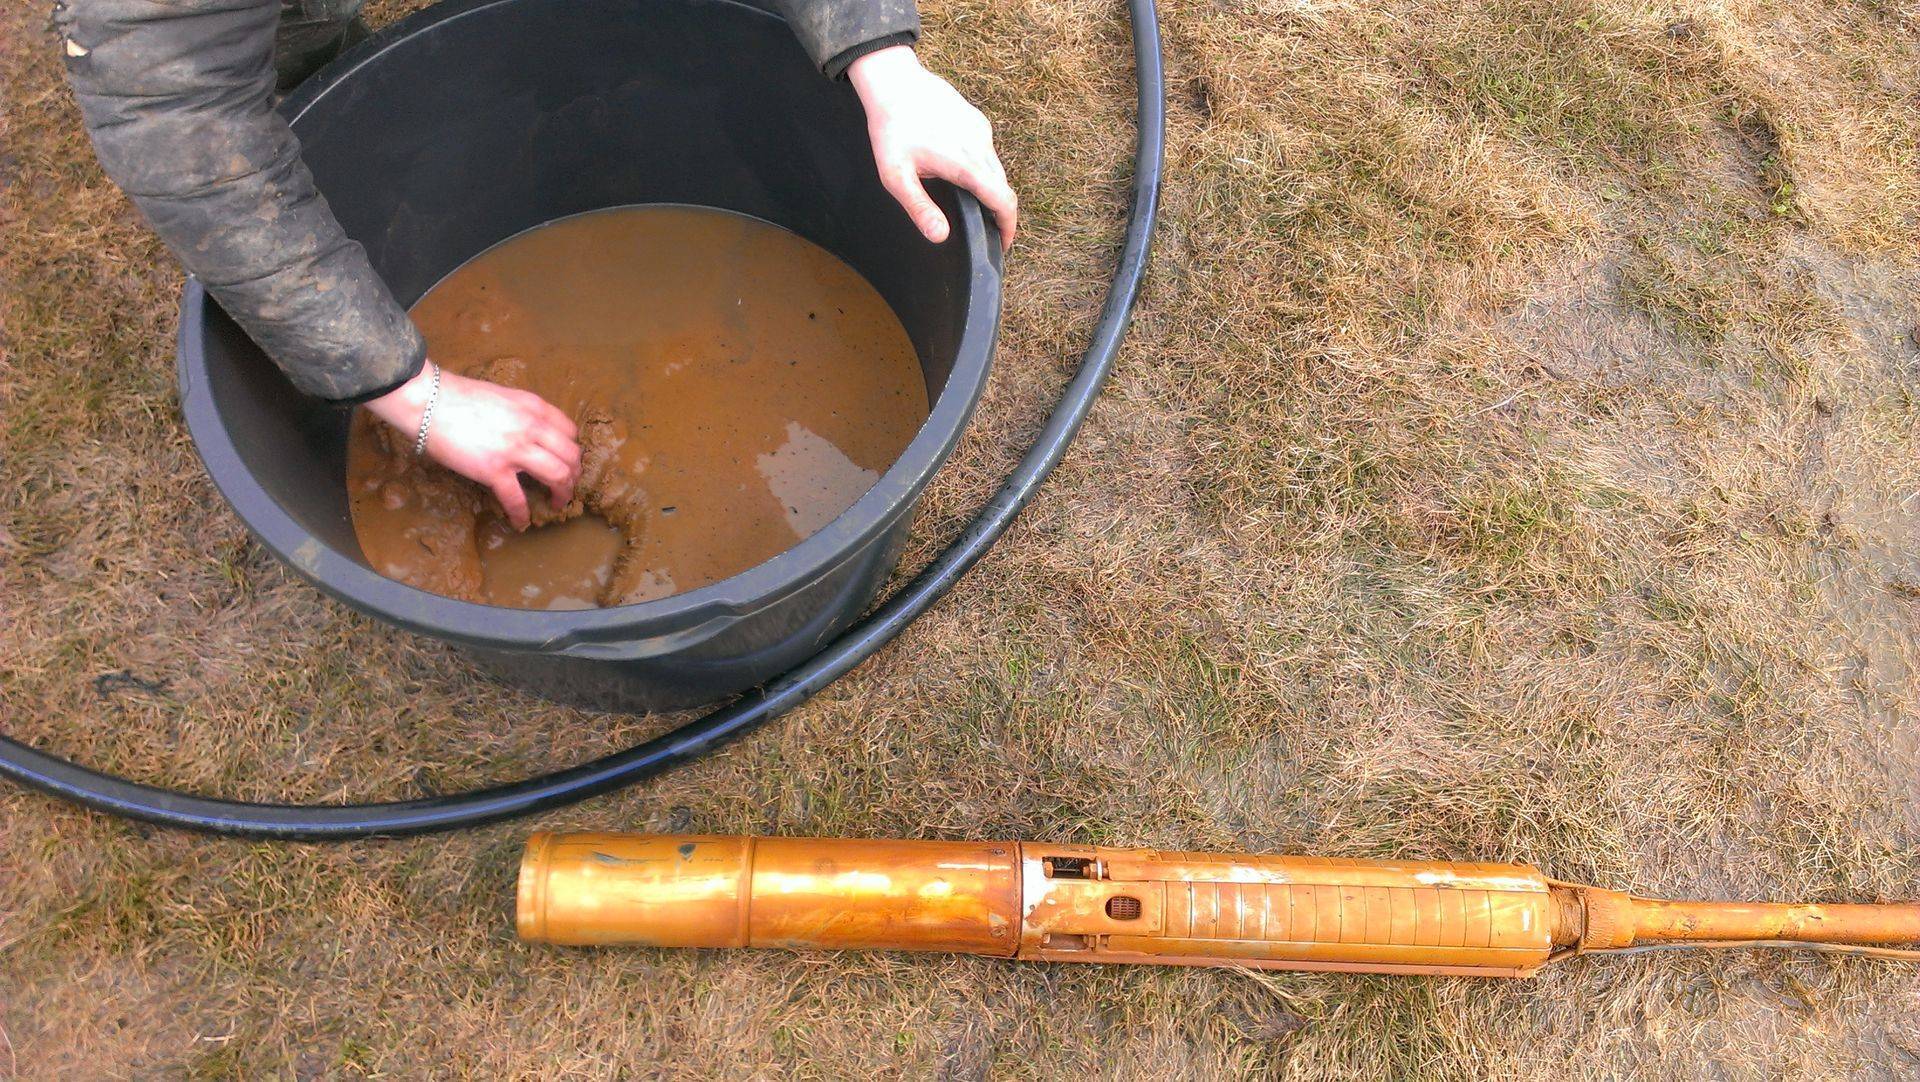 Очистка скважины от ила и песка — проверенные способы с инструкциями